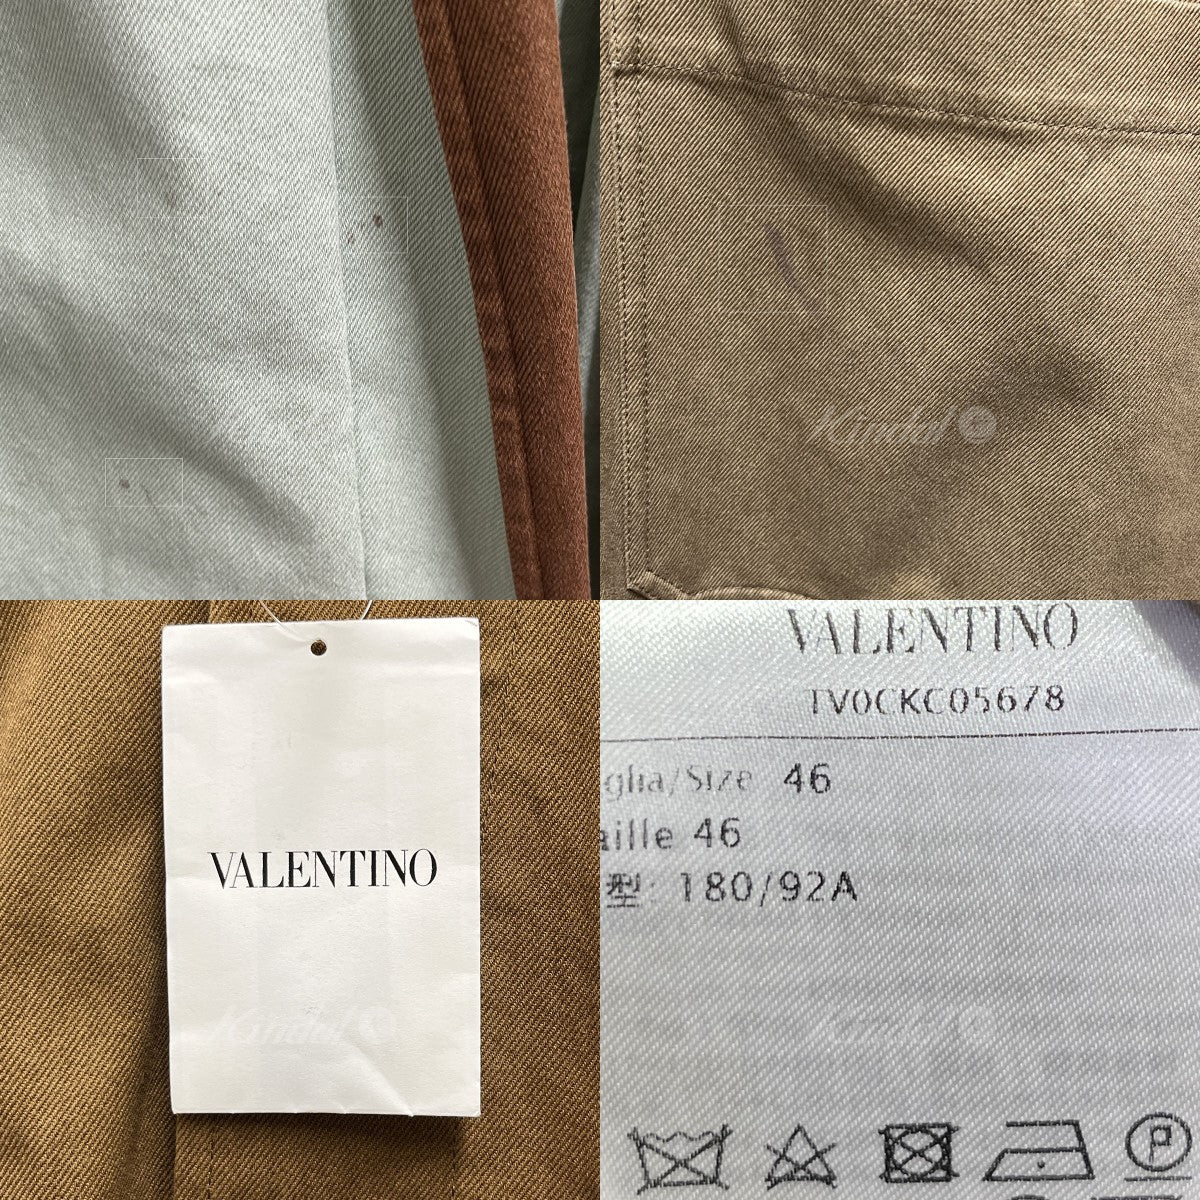 VALENTINO(ヴァレンチノ) 20SSプリーツオーバーサイズコート 